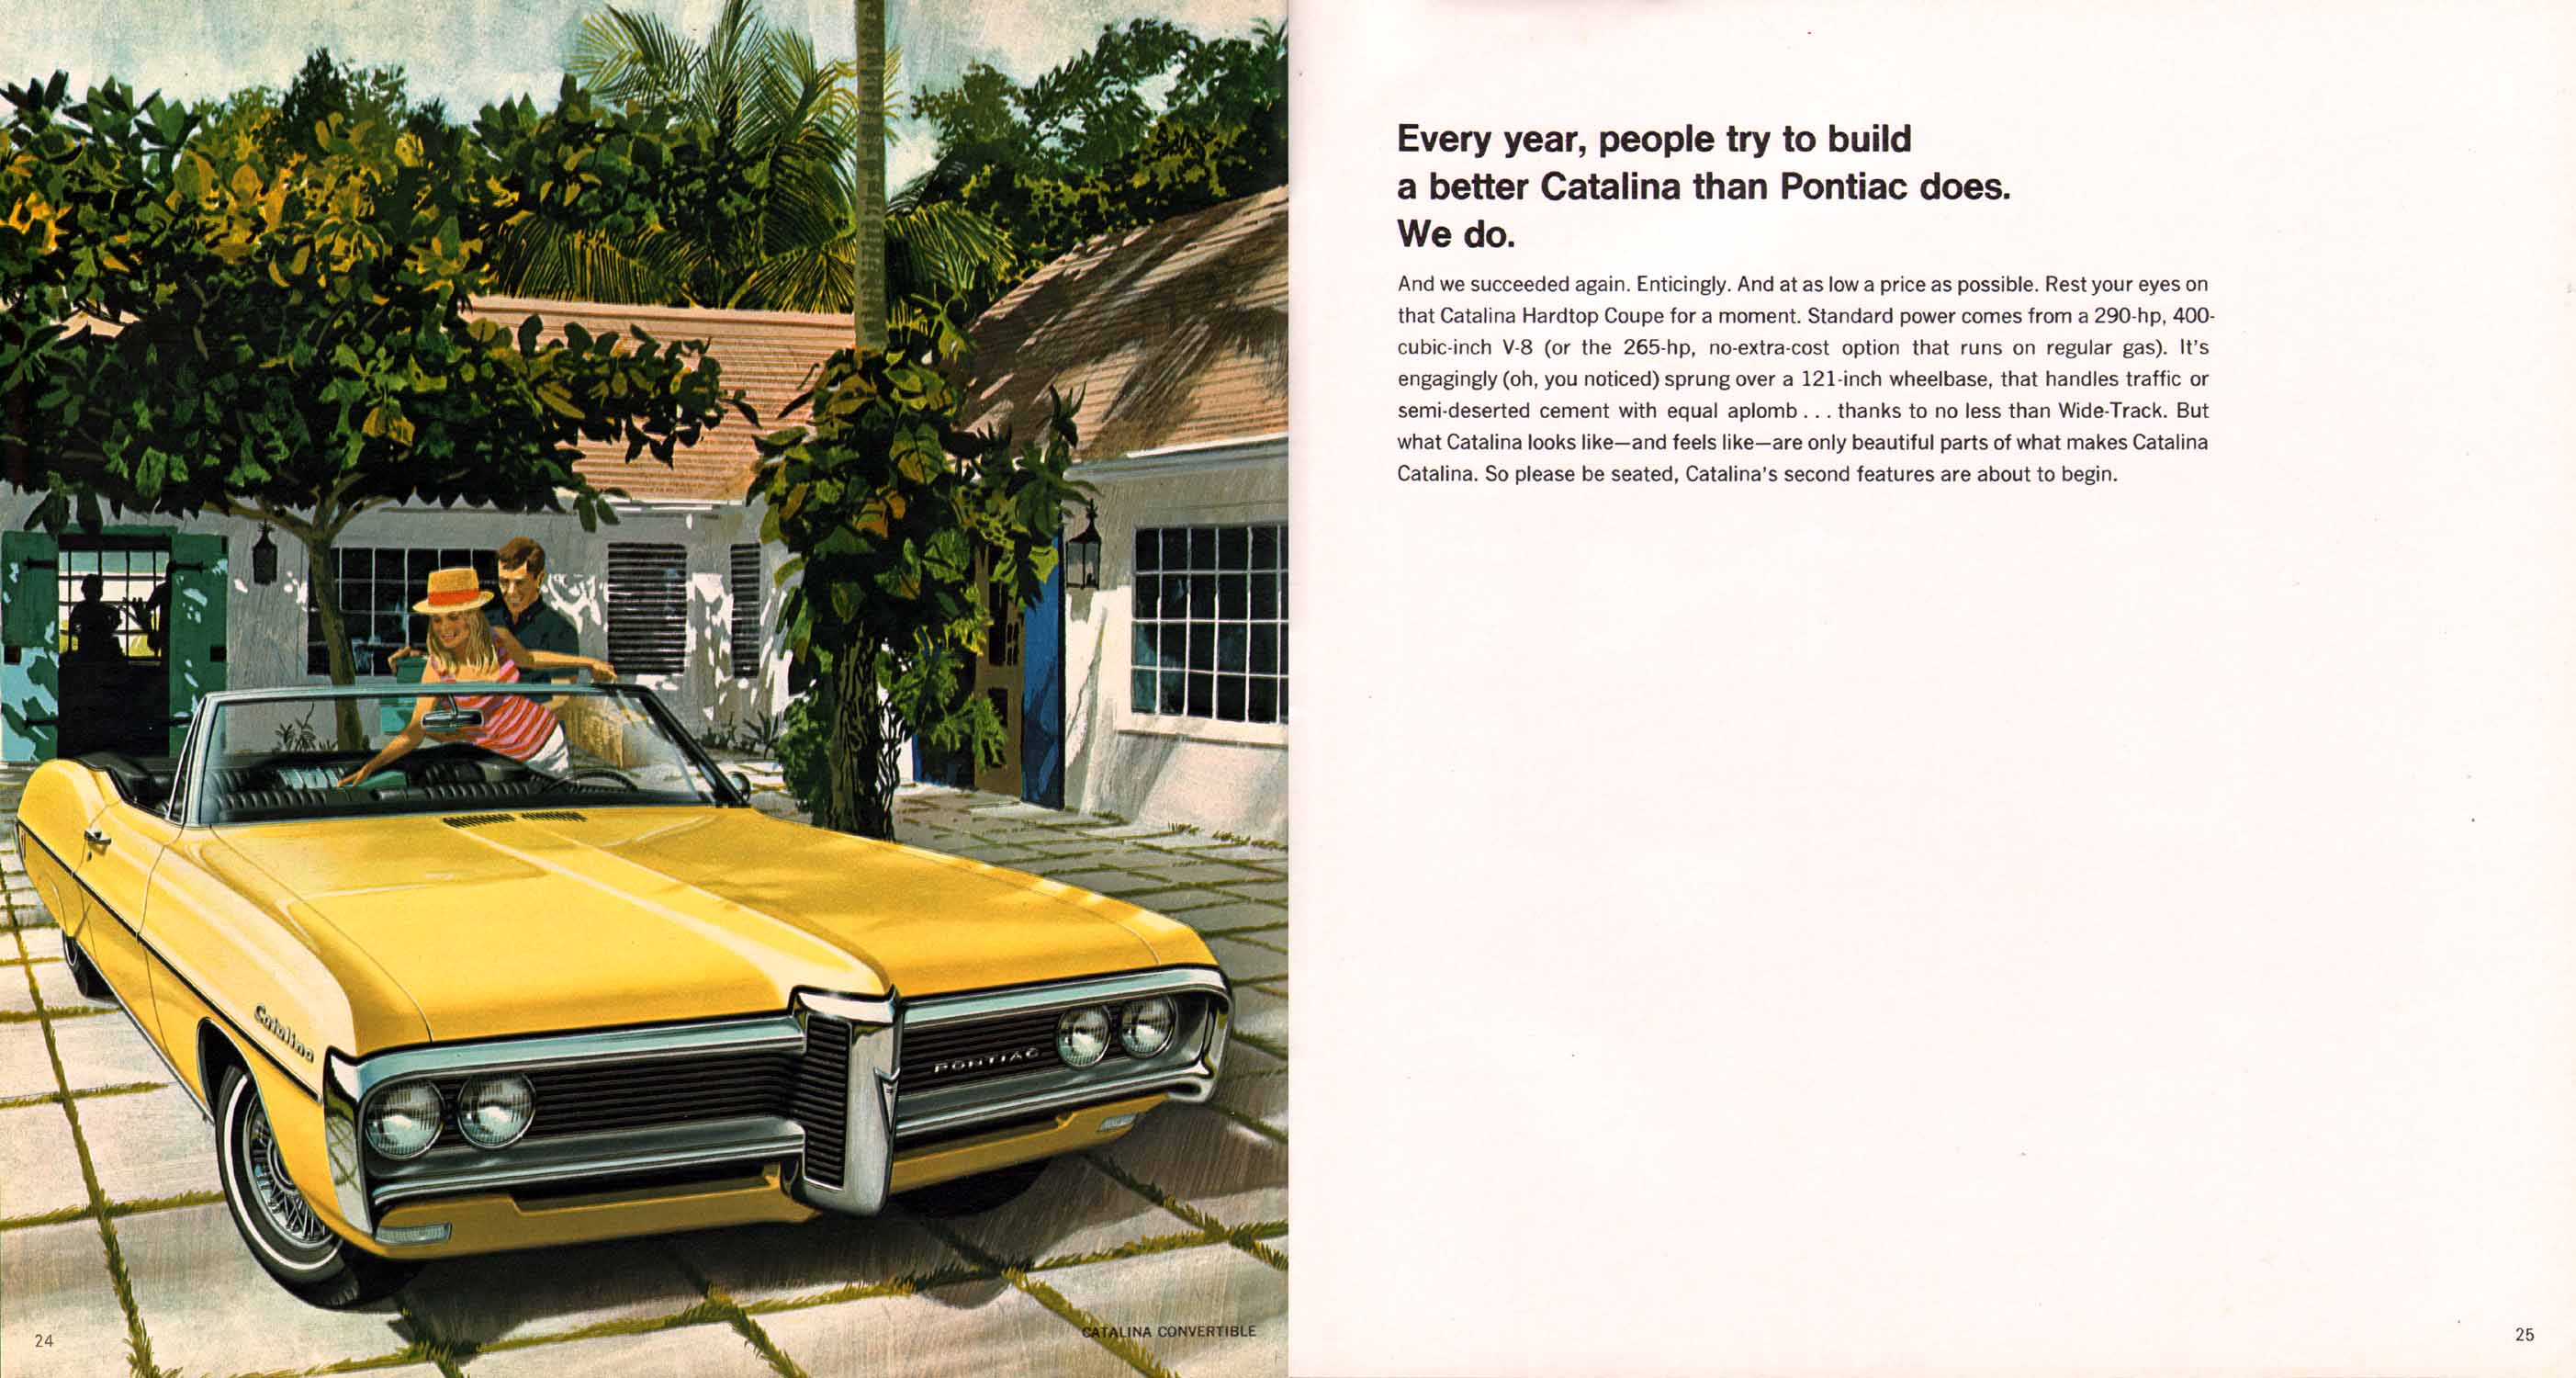 1968_Pontiac_Prestige-24-25